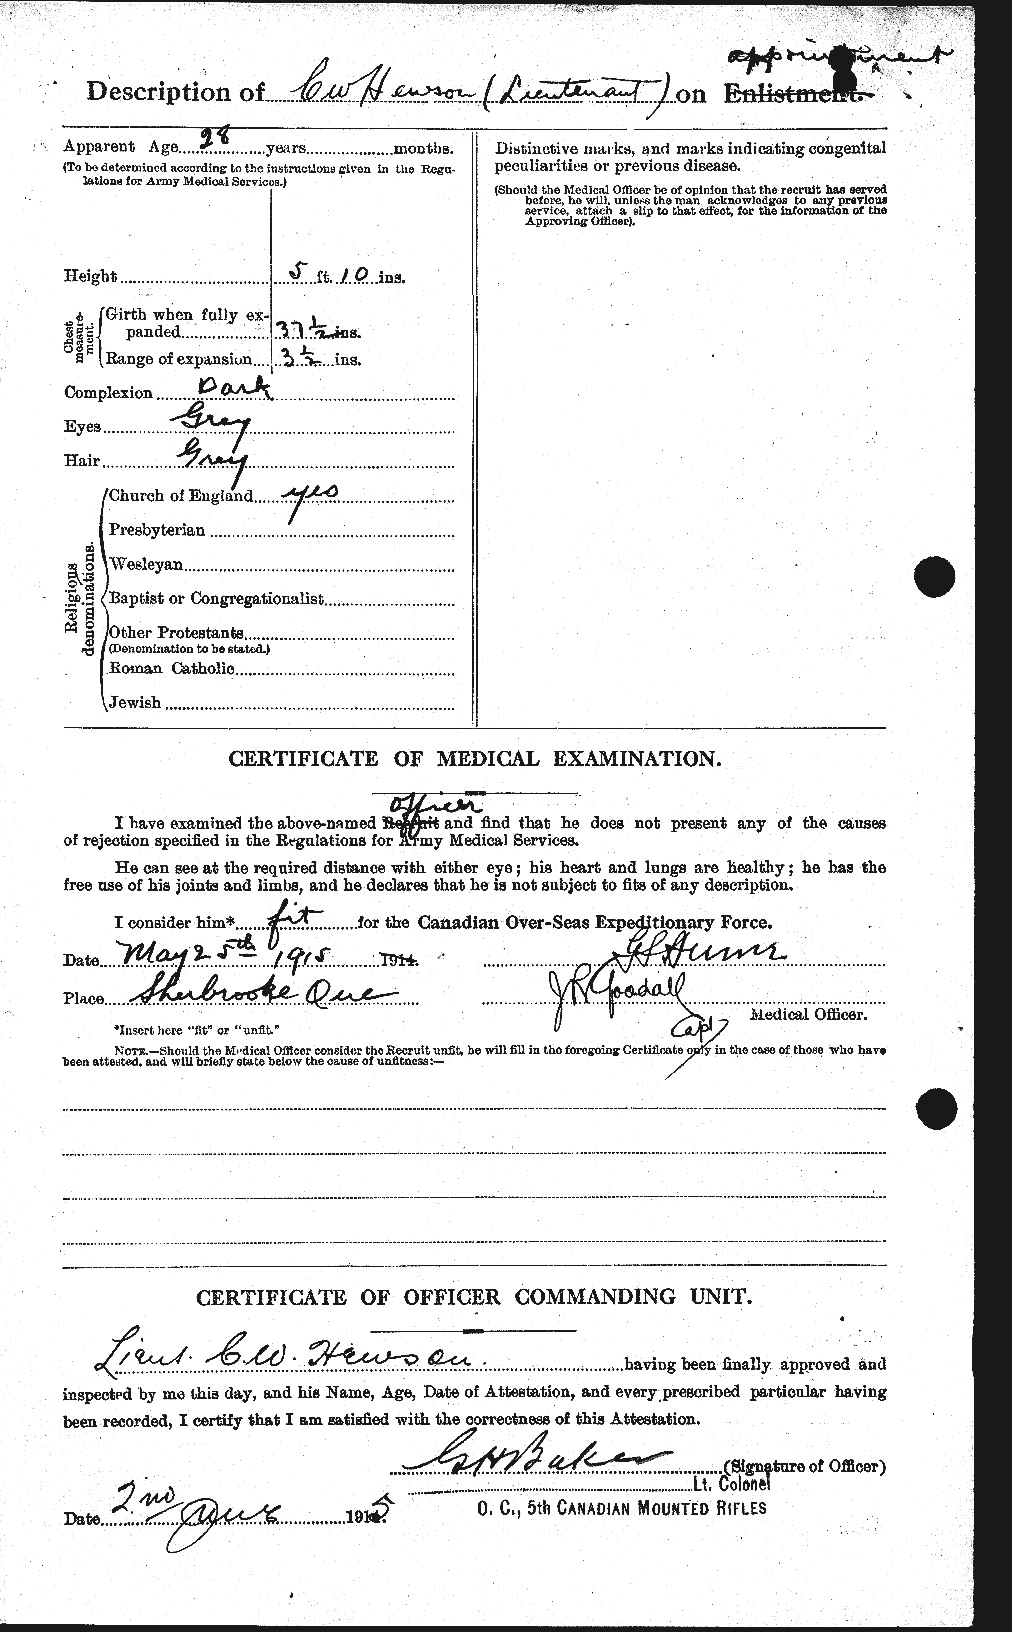 Dossiers du Personnel de la Première Guerre mondiale - CEC 392321b